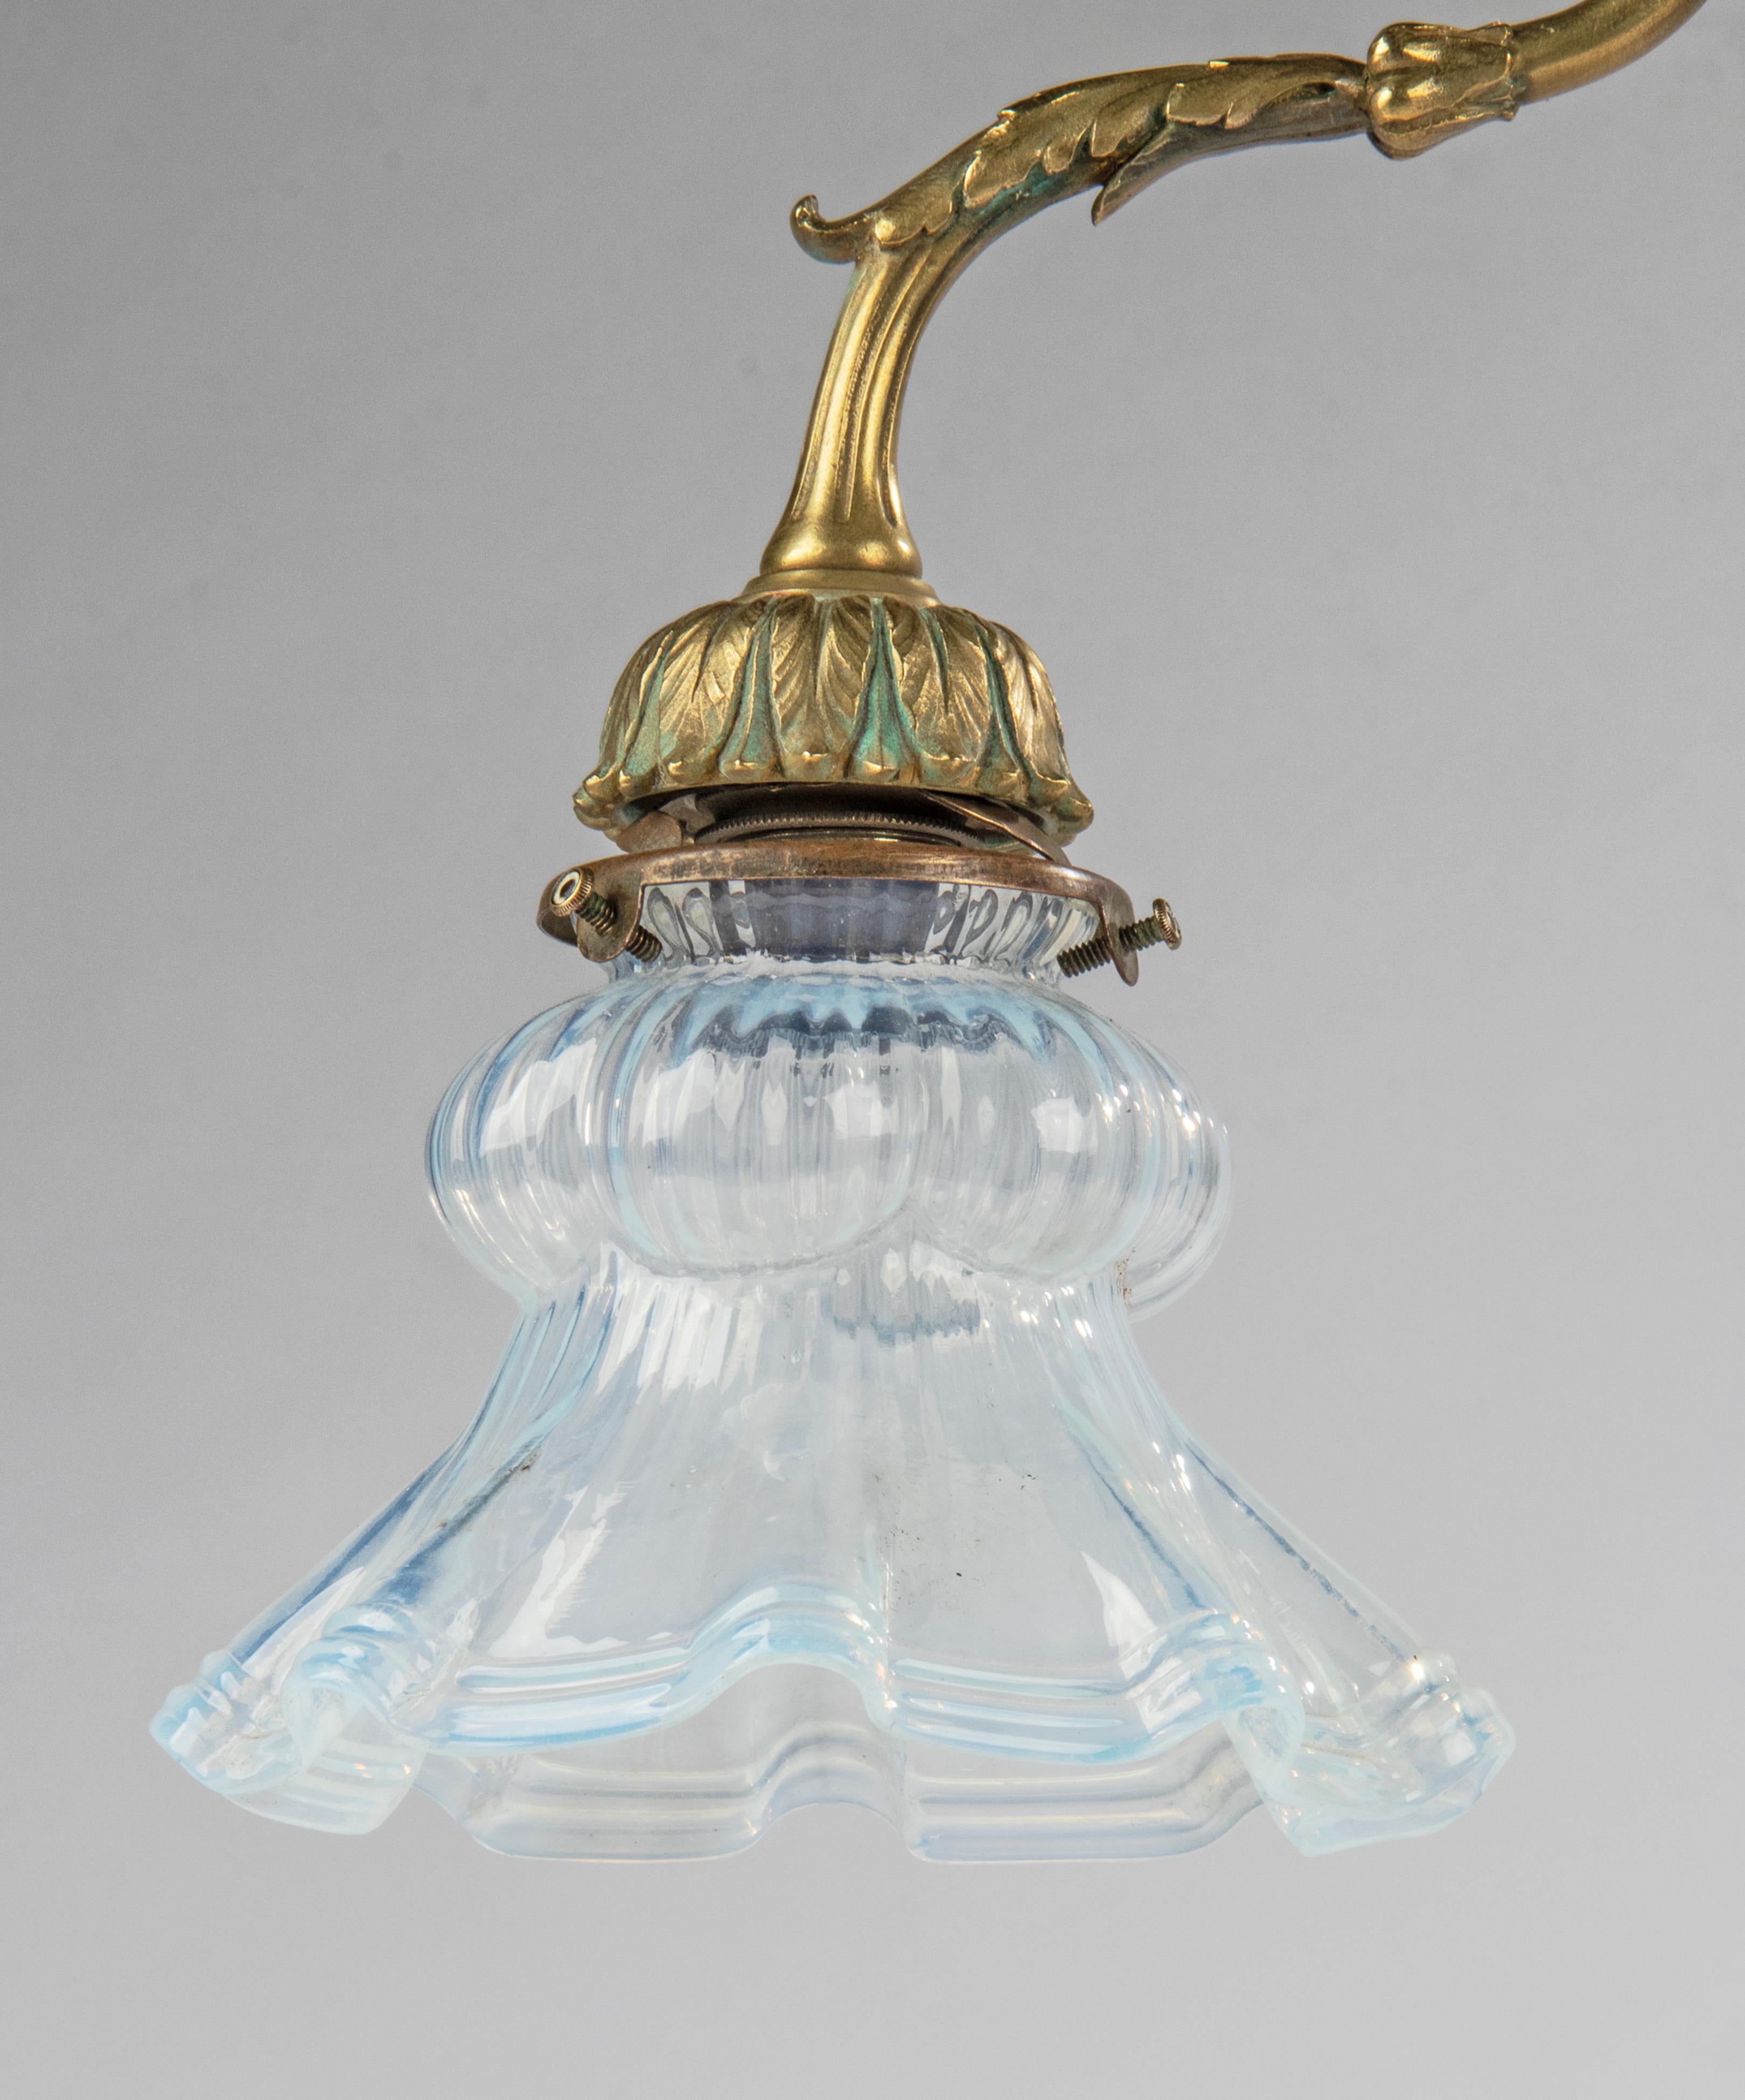 Eine elegante antike Tischlampe im Louis XVI-Stil. Die Lampe ist aus Kupfer und Bronzeguss gefertigt. Mit einem blau schillernden Glasschirm. Der Fuß hat innen ein Steingewicht für eine gute Stabilität. Die Lampe wurde neu verkabelt, mit Schalter